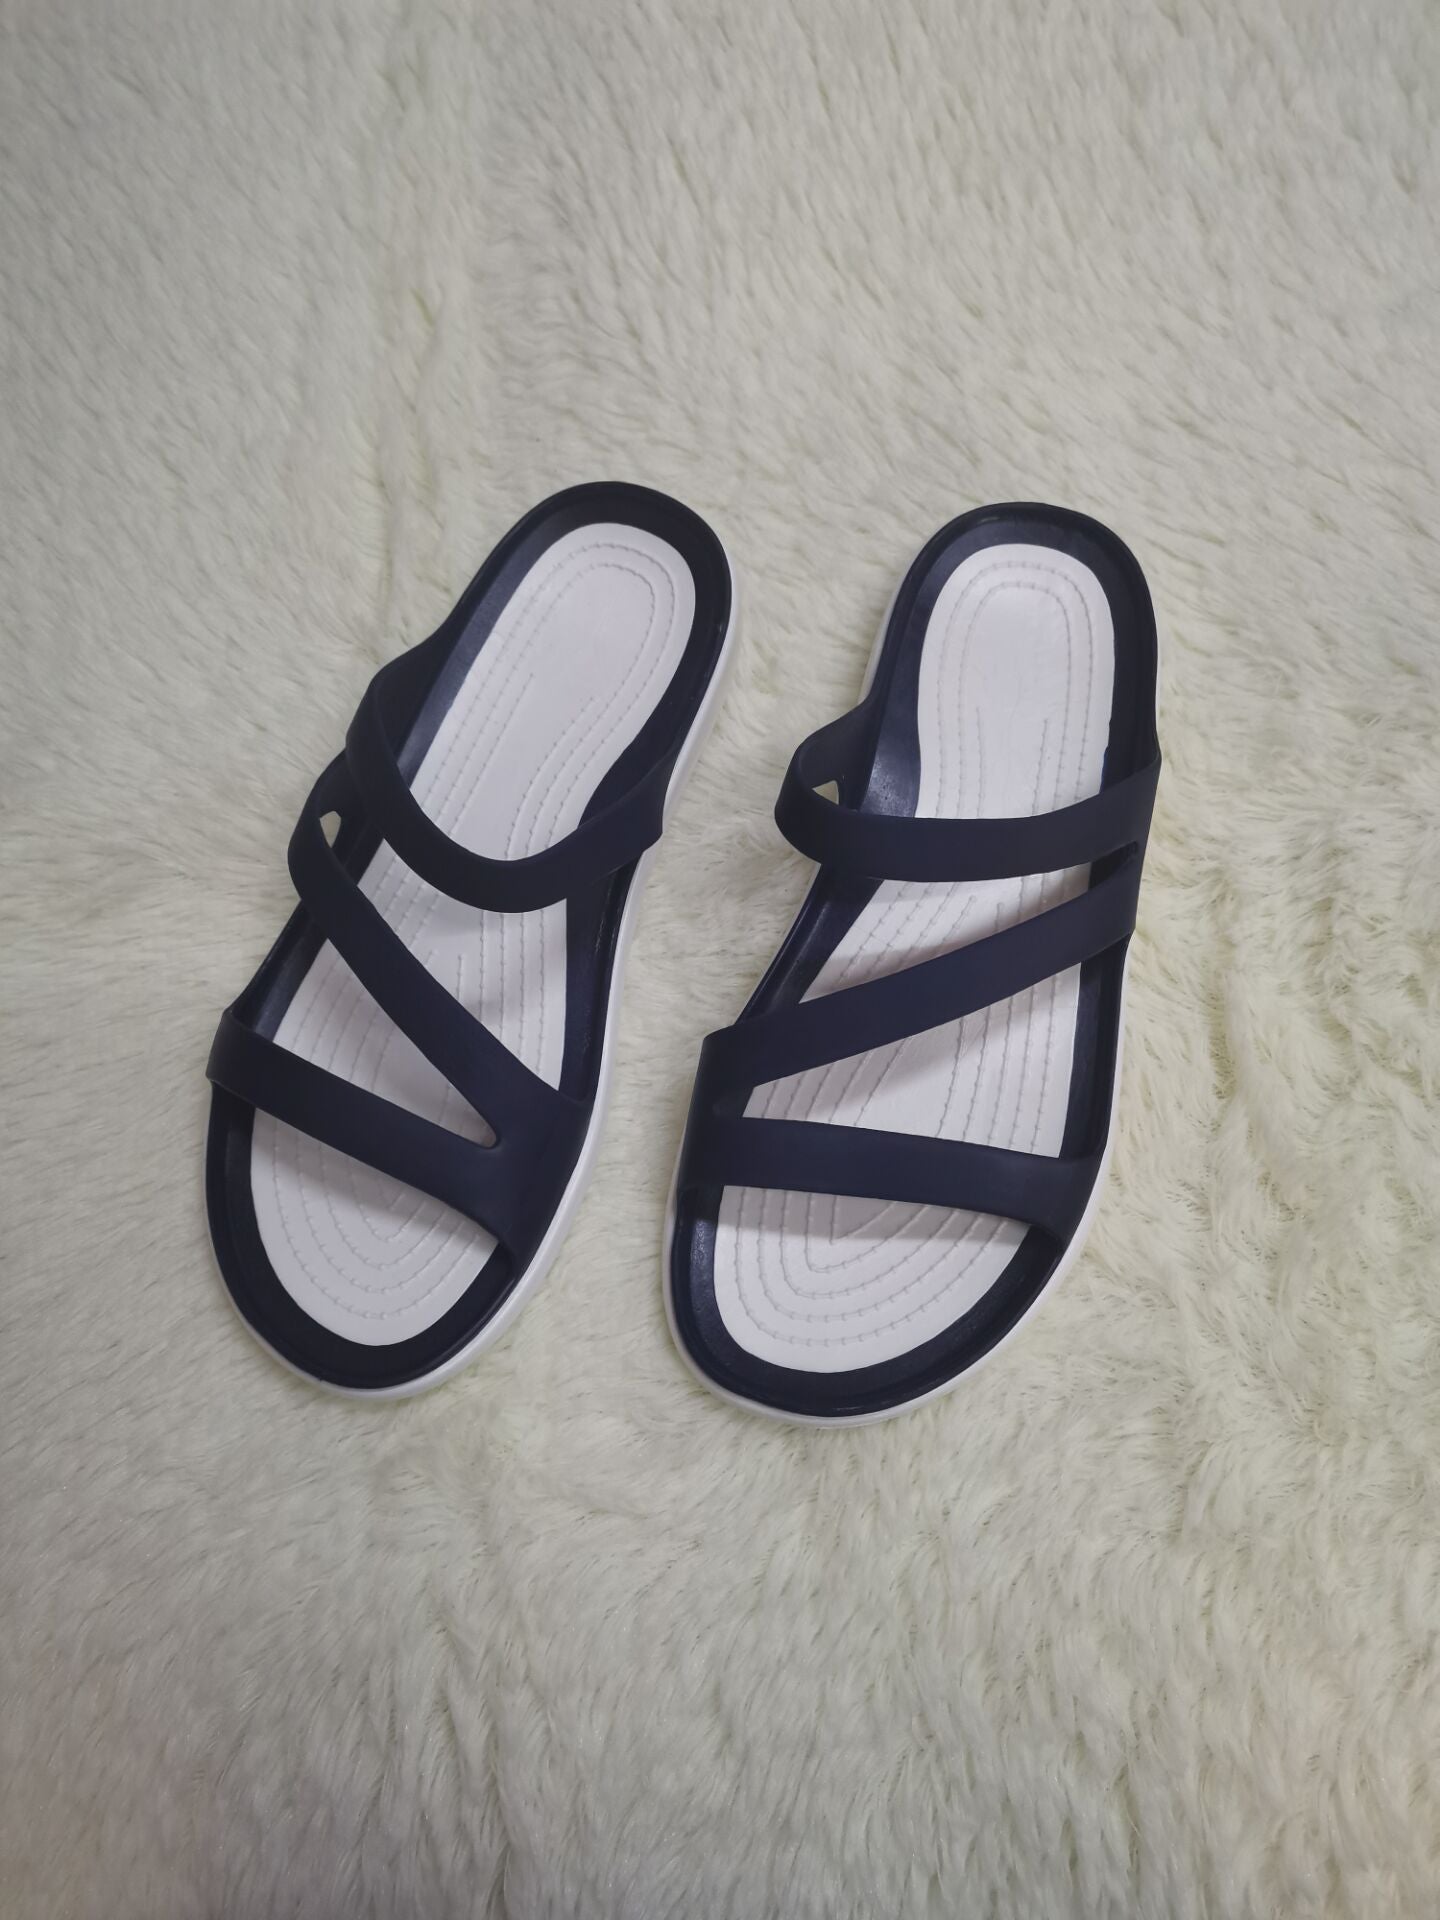 Verano transfronterizo nuevas zapatillas frías de fondo plano zapatos de playa junto al mar versión coreana zapatillas planas casuales para mujer